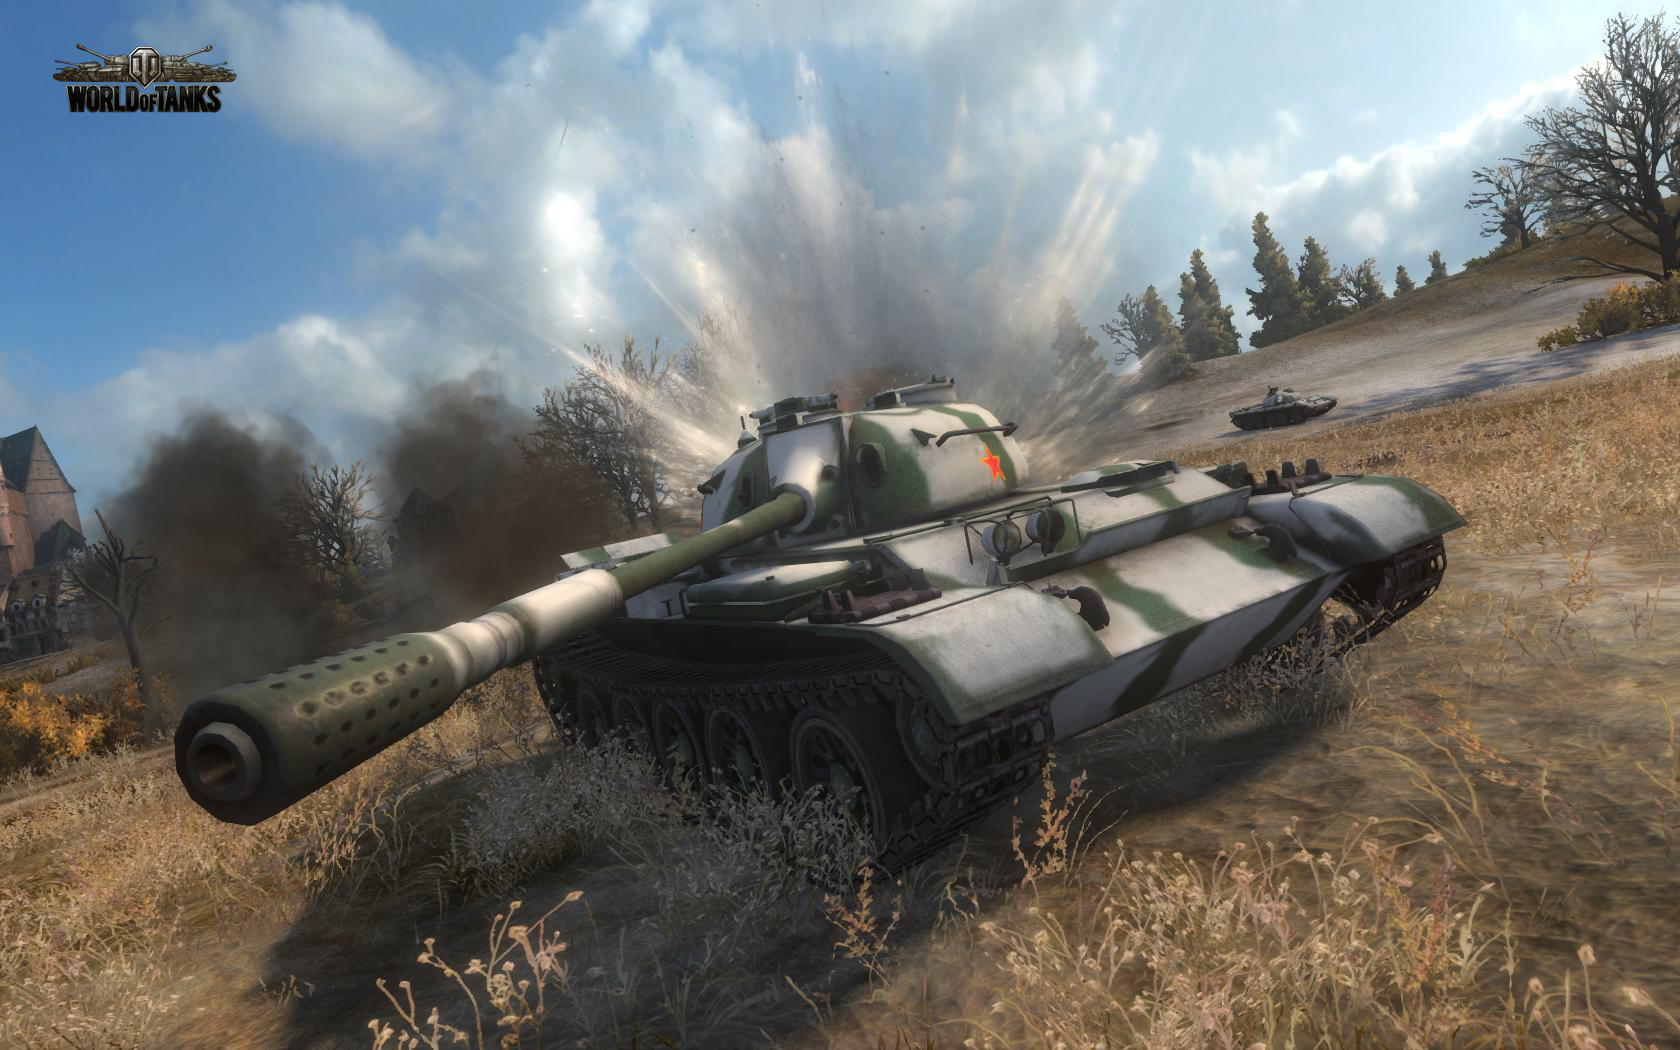 Фото танка из игры world of tanks